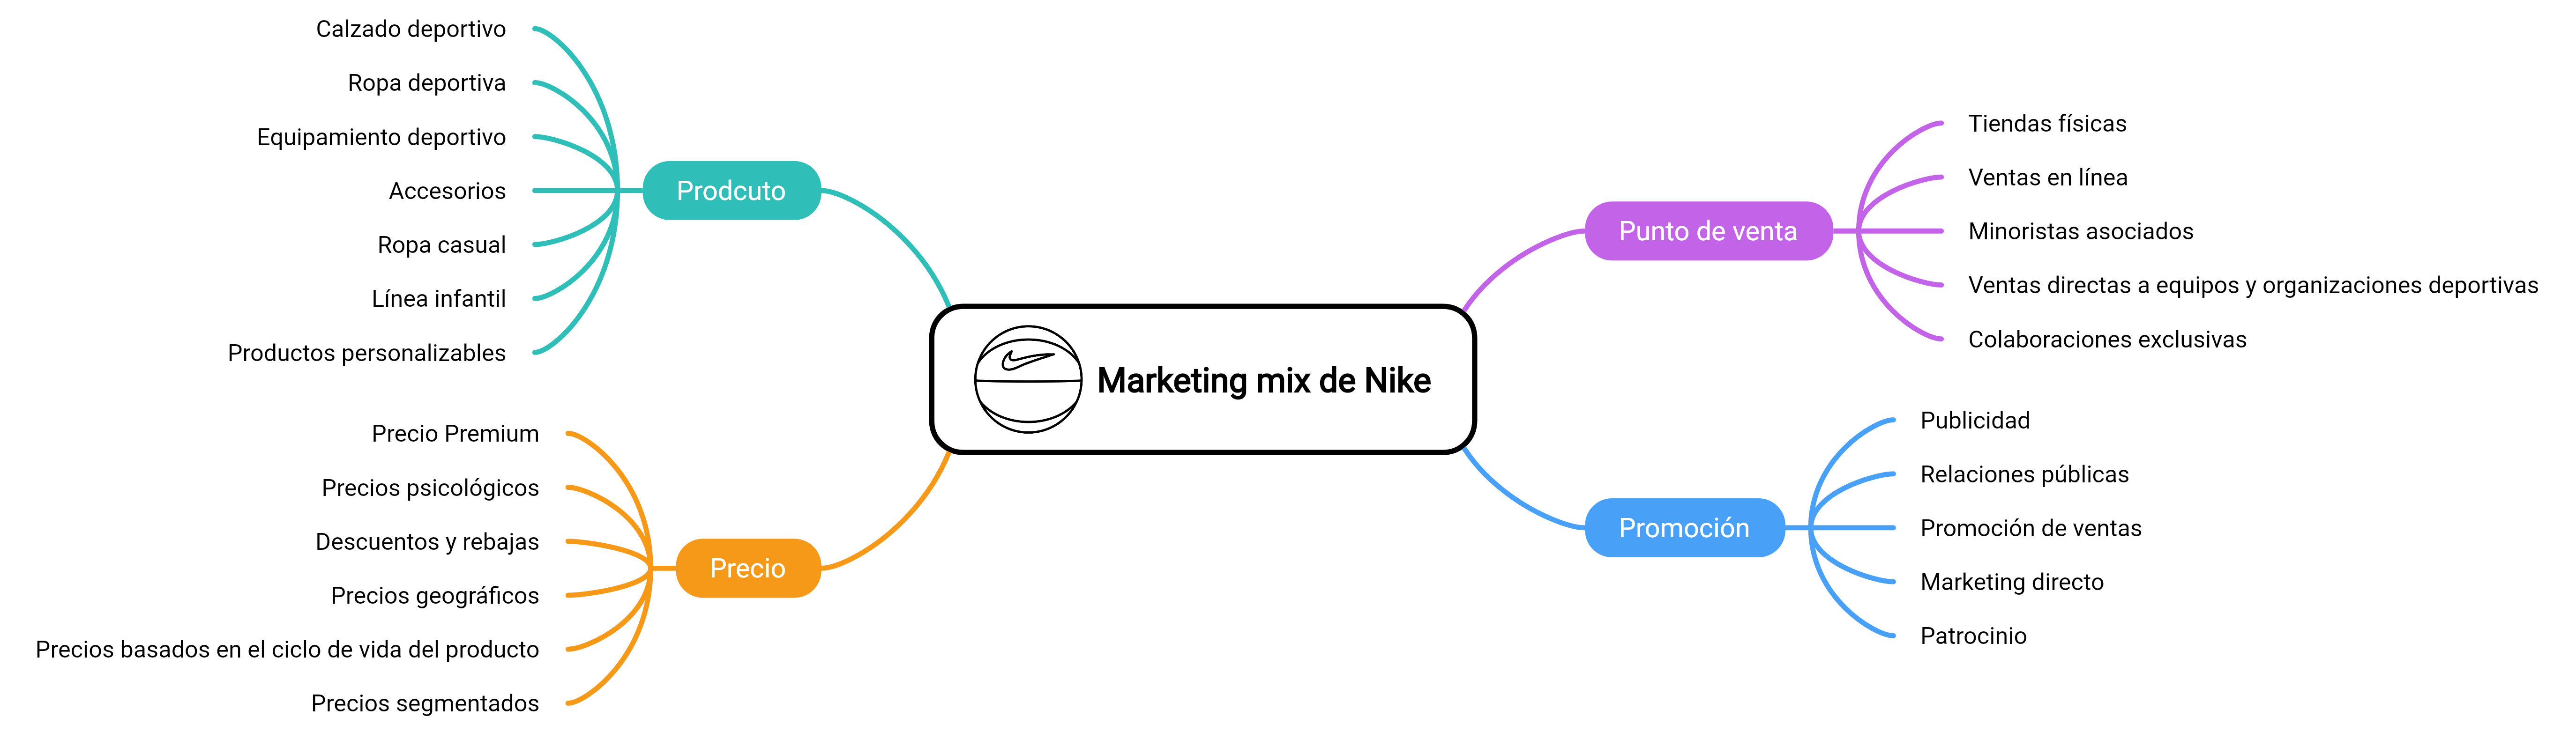 Mapa mental del marketing mix de Nike